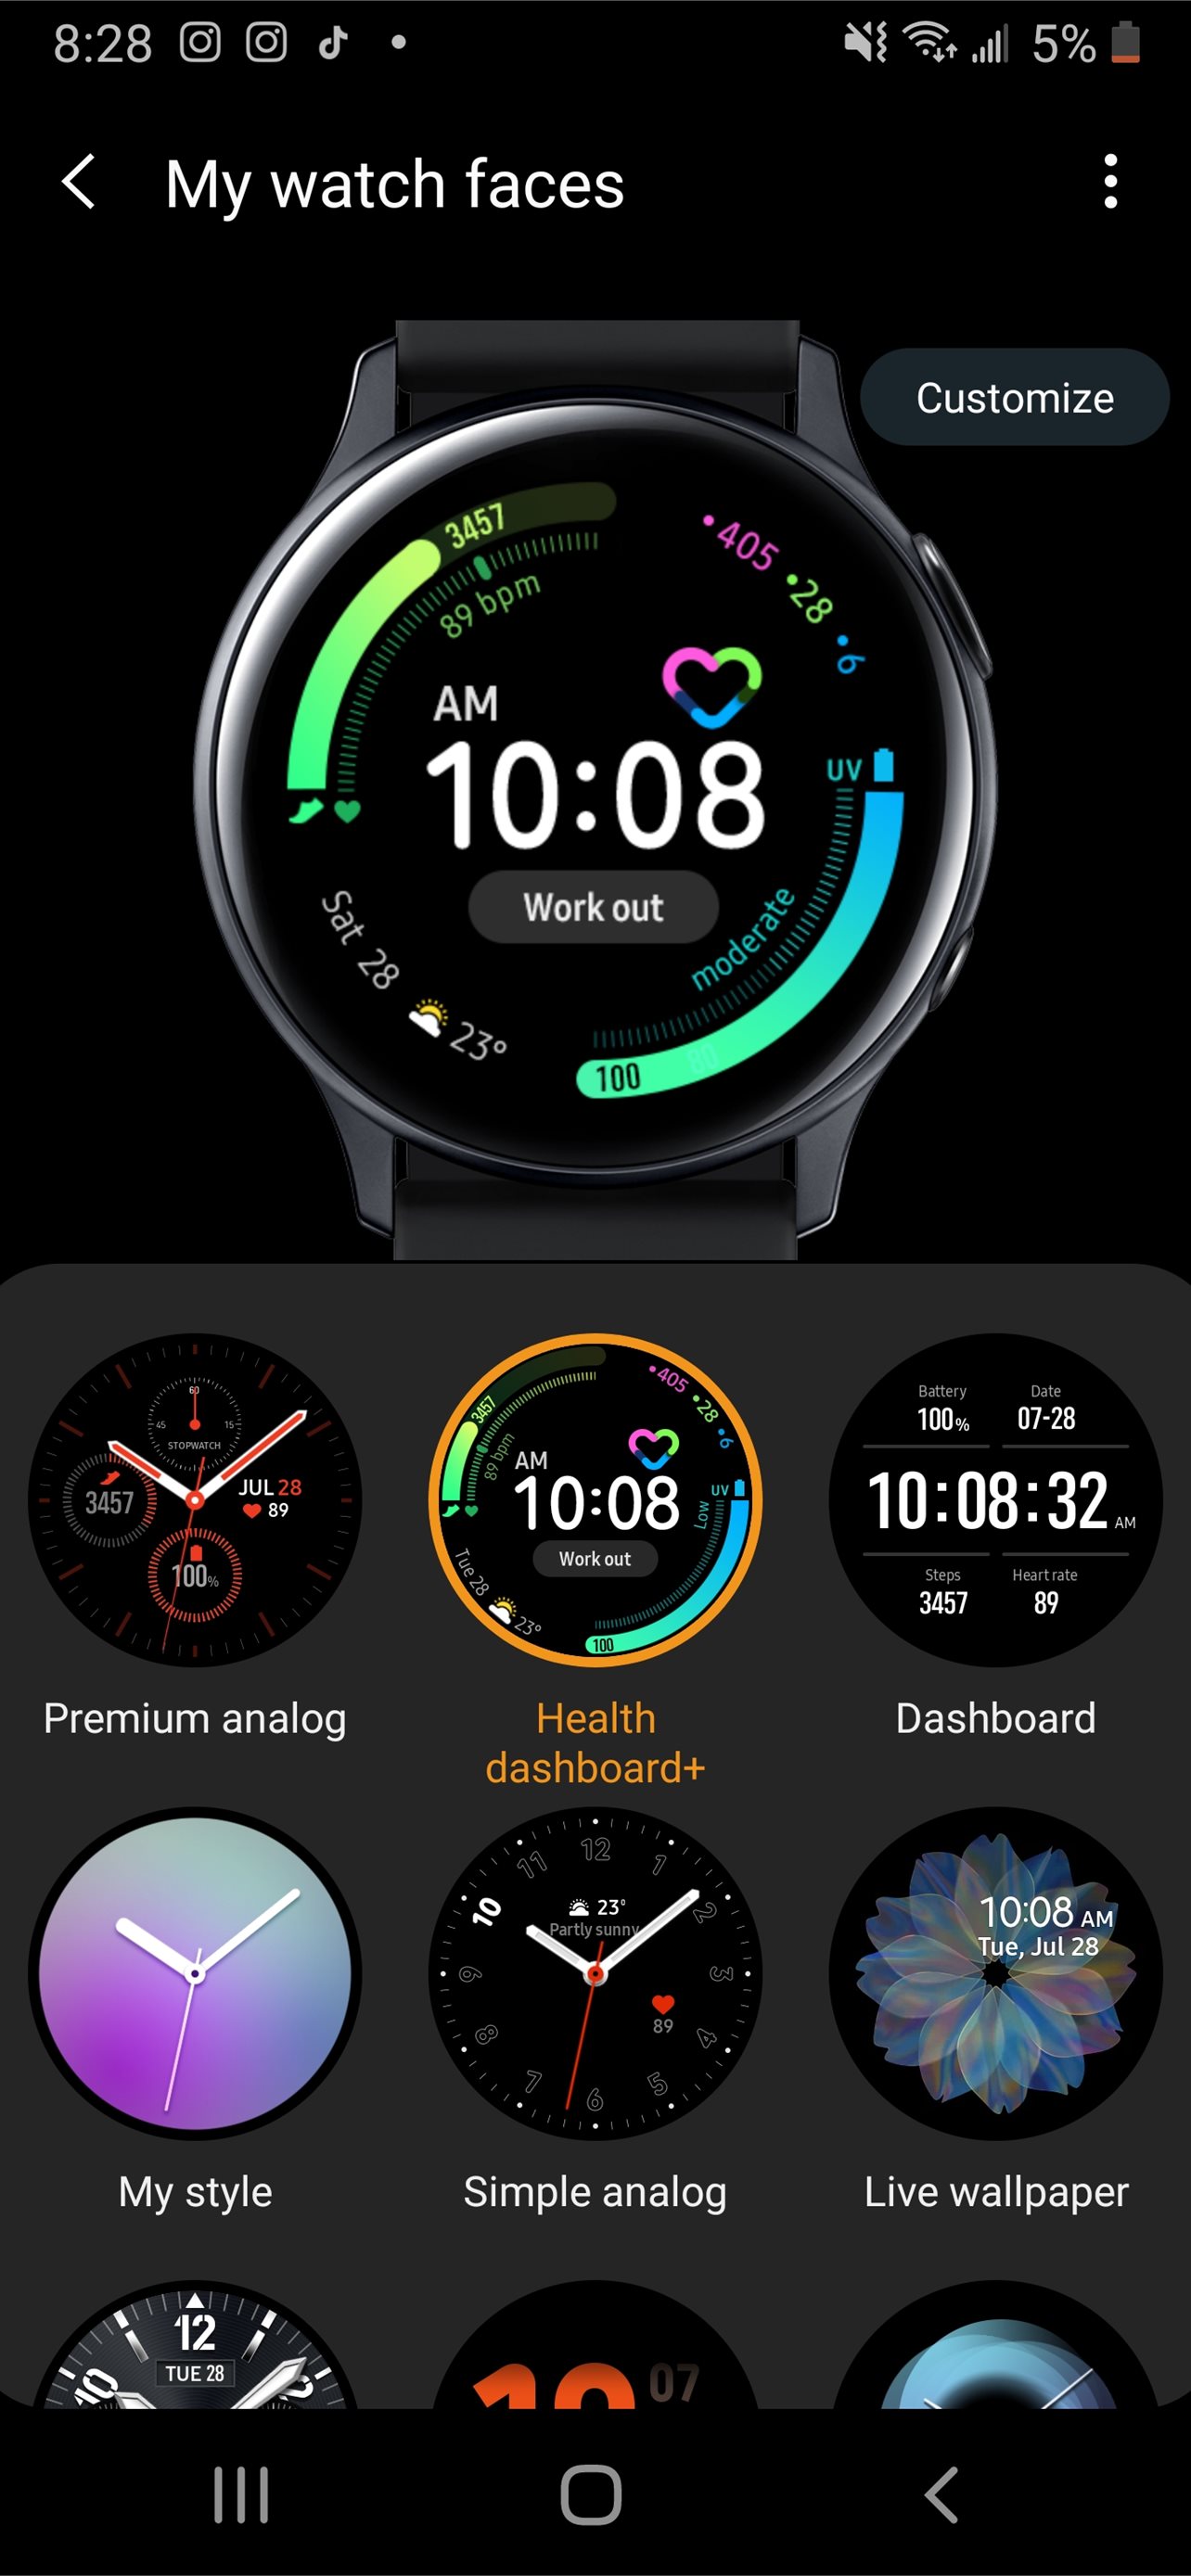 Chọn các hình nền đẹp cho Samsung Galaxy Watch Active của bạn từ bộ sưu tập iPhone Wallpapers. Bạn có thể tự tạo những bức ảnh nền đầy màu sắc và đáng yêu để thêm phần tươi sáng cho phong cách đeo đồng hồ của mình.